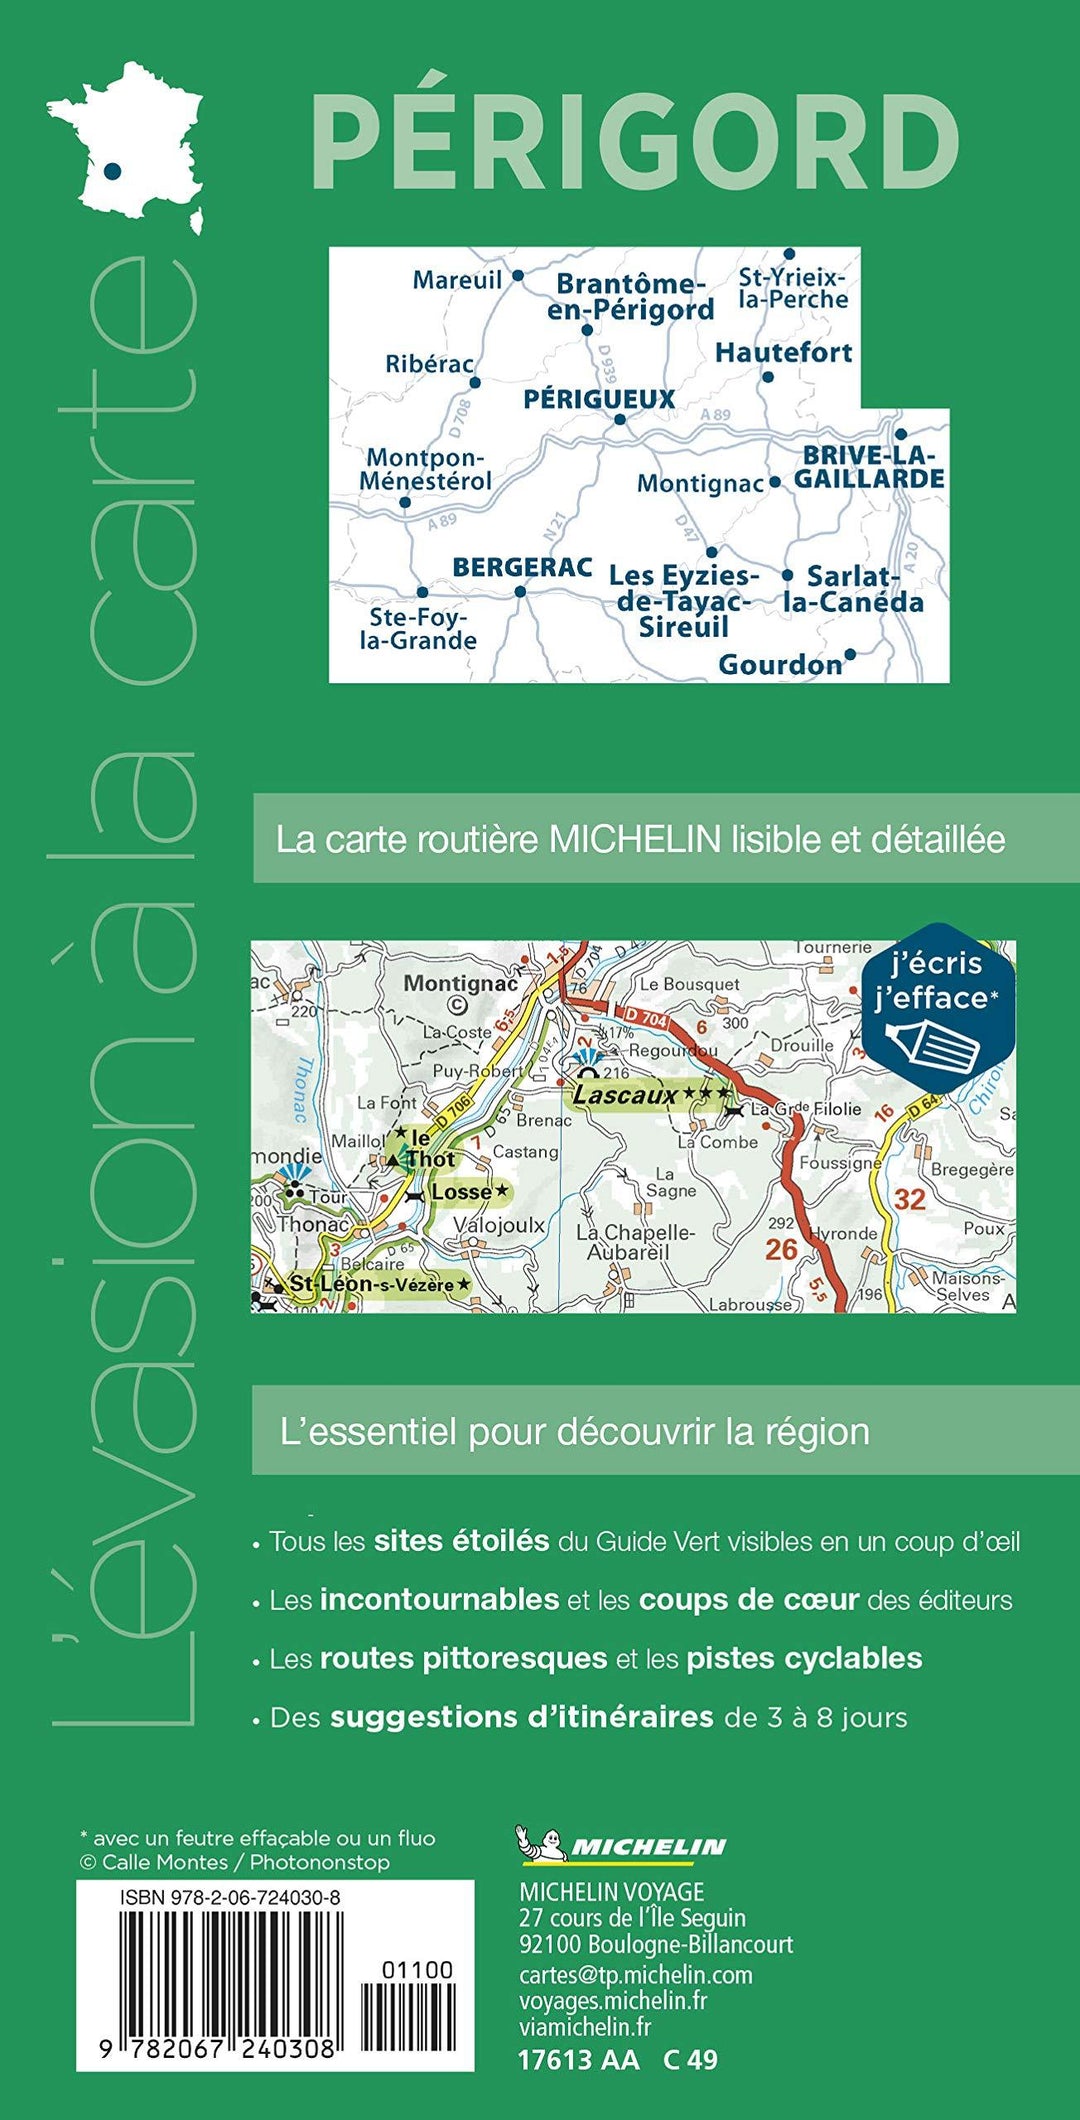 Carte routière plastifiée - Périgord | Michelin carte pliée Michelin 